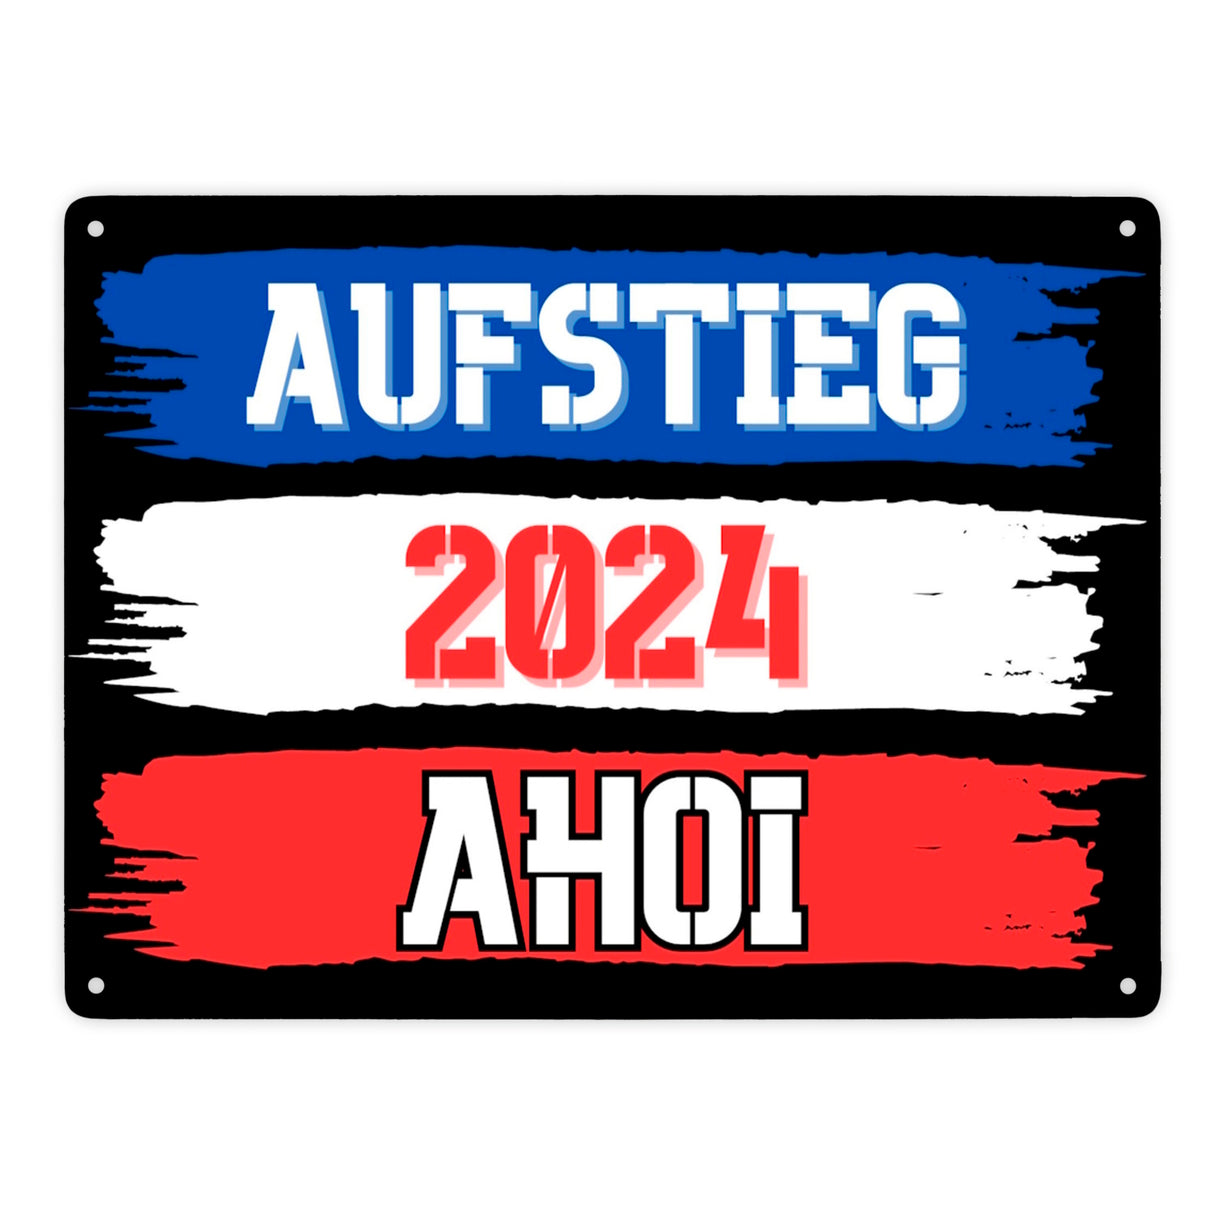 Kiel Aufstieg 2024 Metallschild in 15x20 cm mit Spruch Ahoi